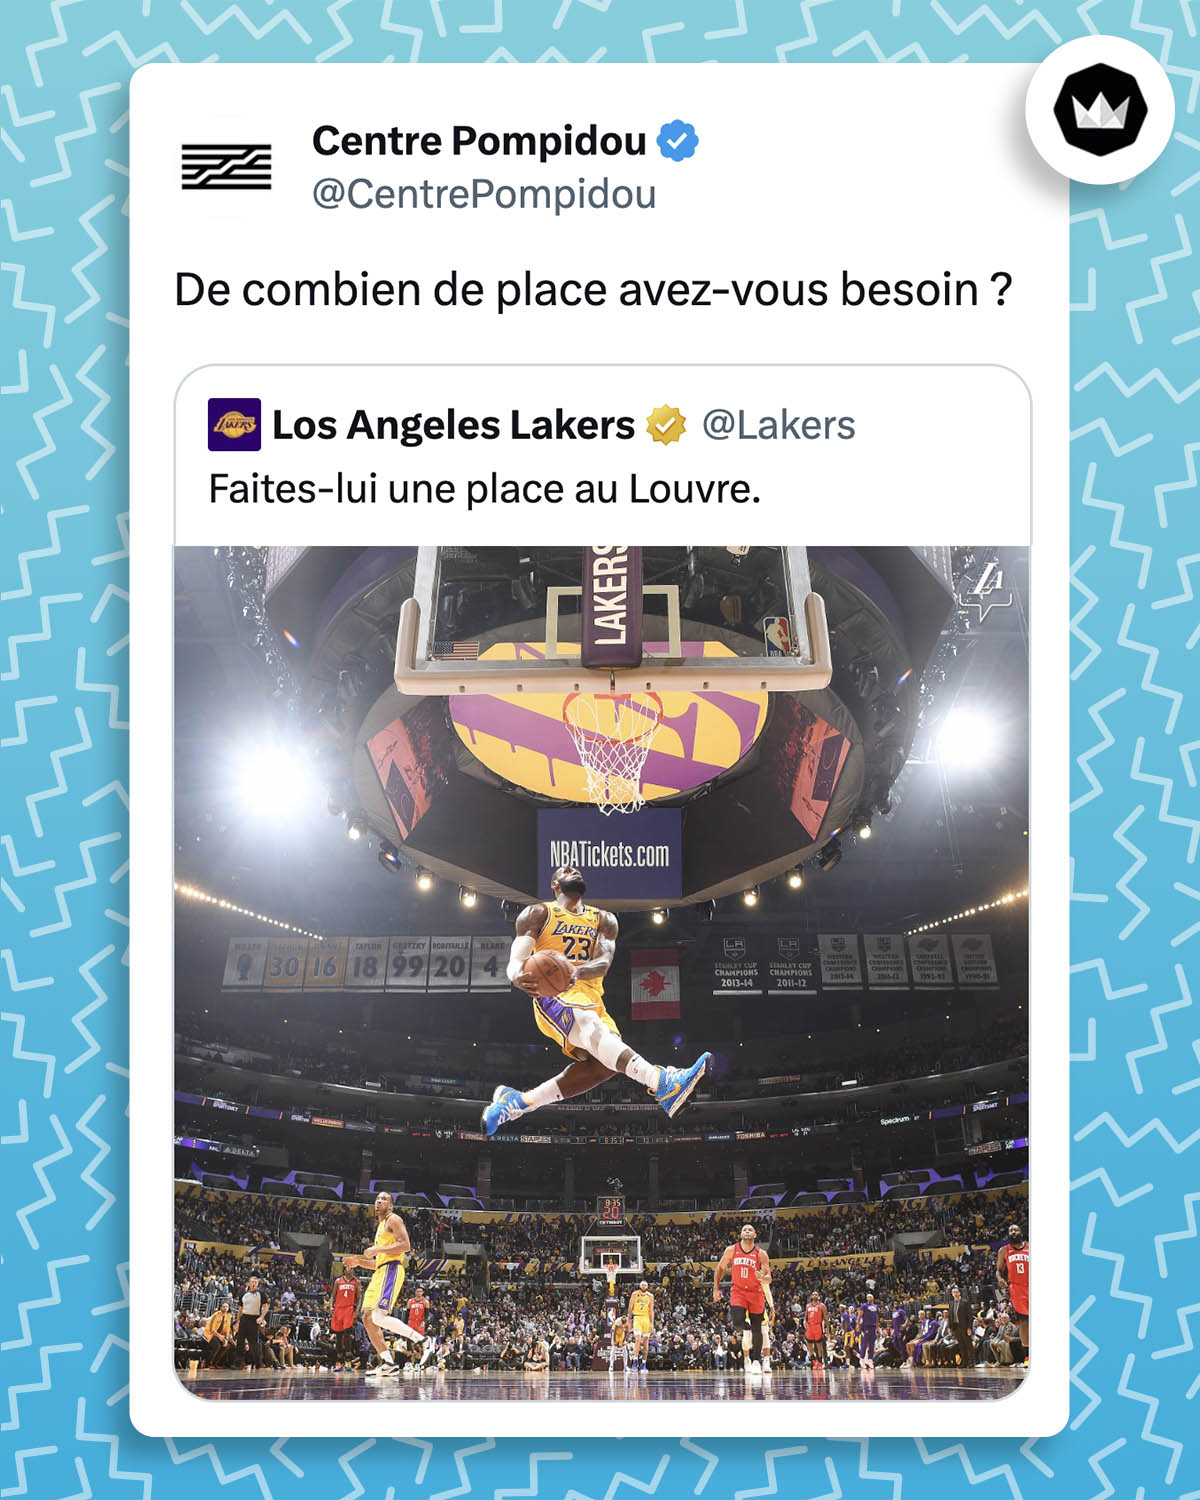 @Lakers : "Faites-lui une place au Louvre" avec une photo d'un saut spectaculaire de LeBron James.
@CentrePompidou : "De combien de place avez-vous besoin ?"